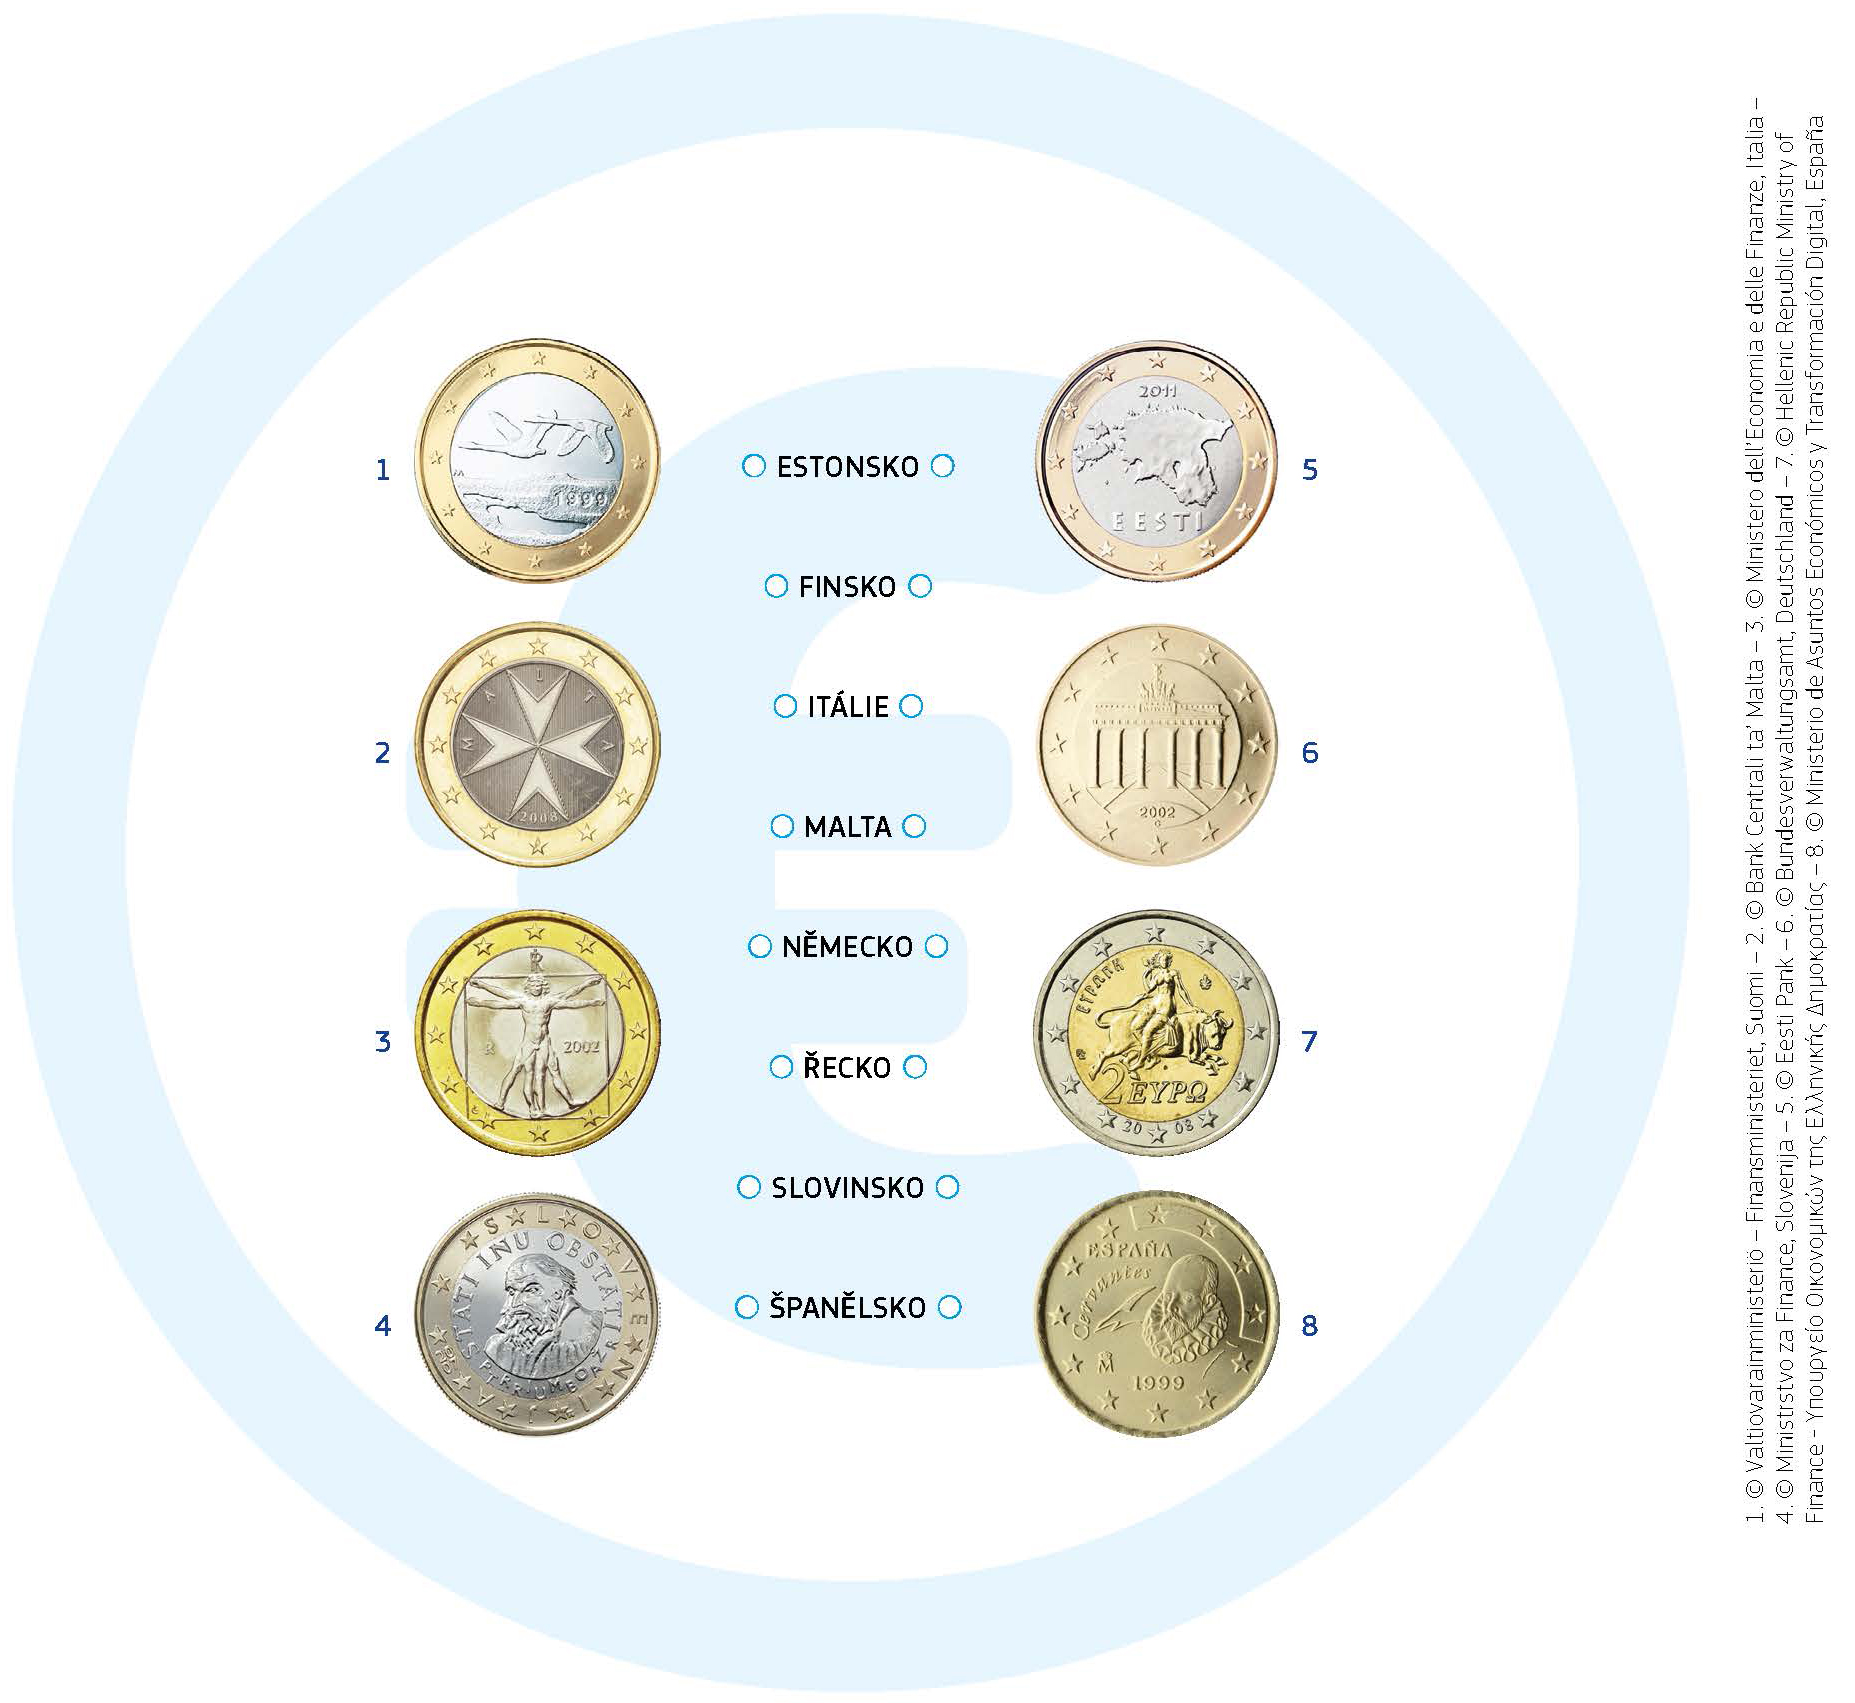 Všechny euromince zobrazují na jedné straně mapu Evropy. Tato strana je v každé zemi stejná. Na druhé straně má každá země svůj vlastní motiv. Zde je několik příkladů: Jednoeurová mince ve Finsku zobrazuje dvě letící labutě. Na jedno- a dvoueurových mincích na Maltě je vyobrazen symbol zvaný maltský kříž. Italské jednoeurové mince vyobrazují slavnou kresbu Leonarda da Vinciho, která znázorňuje ideální poměry lidského těla. Řecká dvoueurová mince zobrazuje Europu, kterou unesl Zeus proměněný v býka. Europa je postava řecké mytologie, po níž byla Evropa pojmenována.